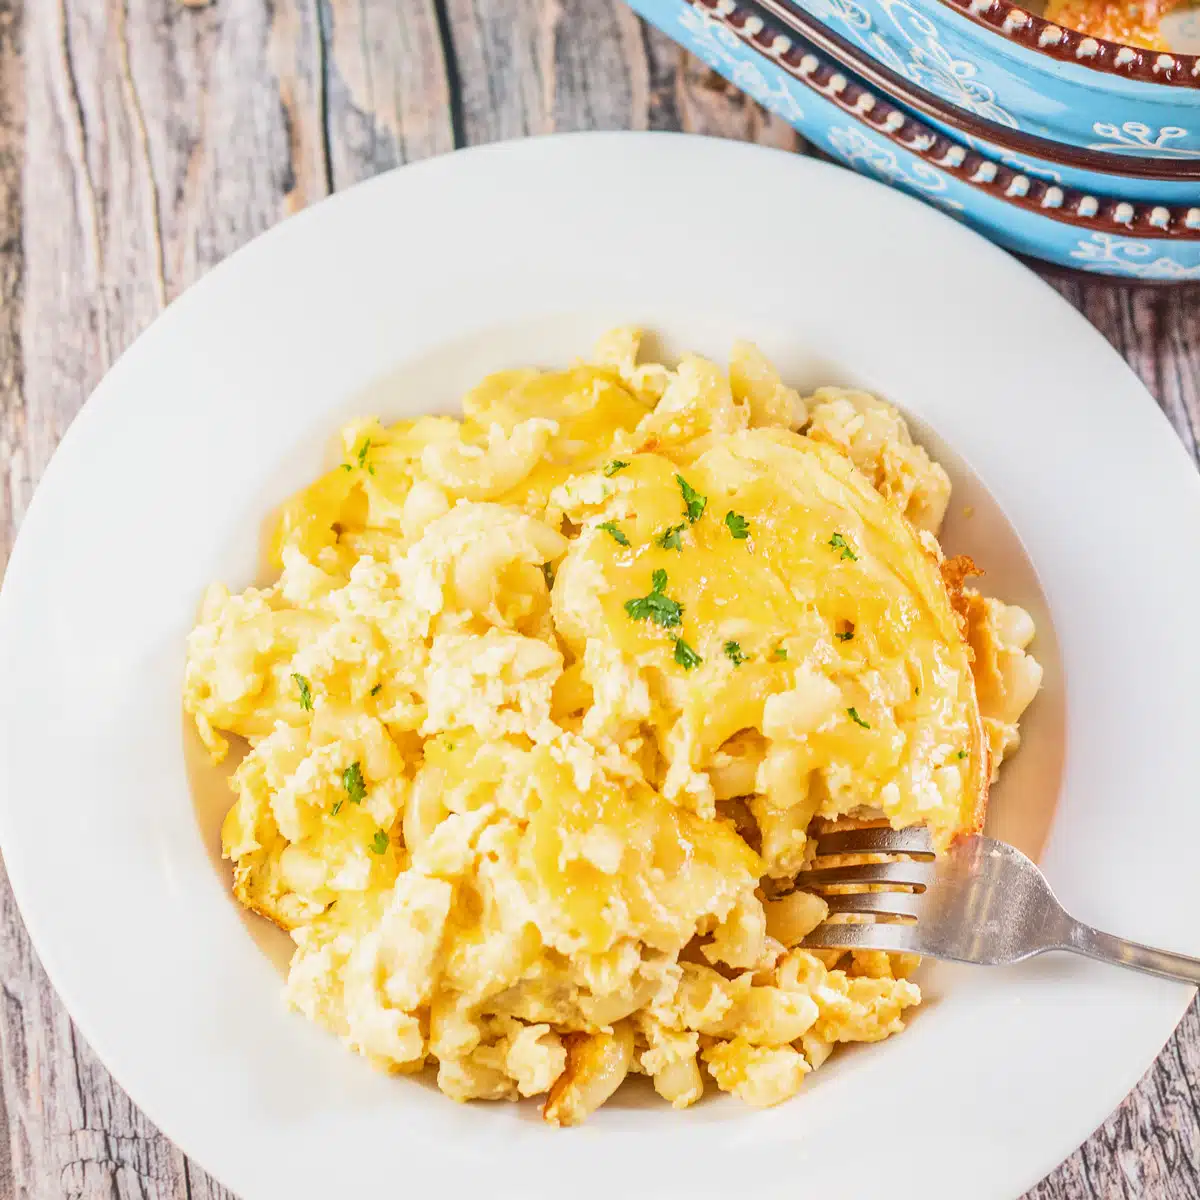 Het beste recept voor macaroni en kaas van Paula Deen met veel kaas, eieren, zure room en tot in de perfectie gebakken.